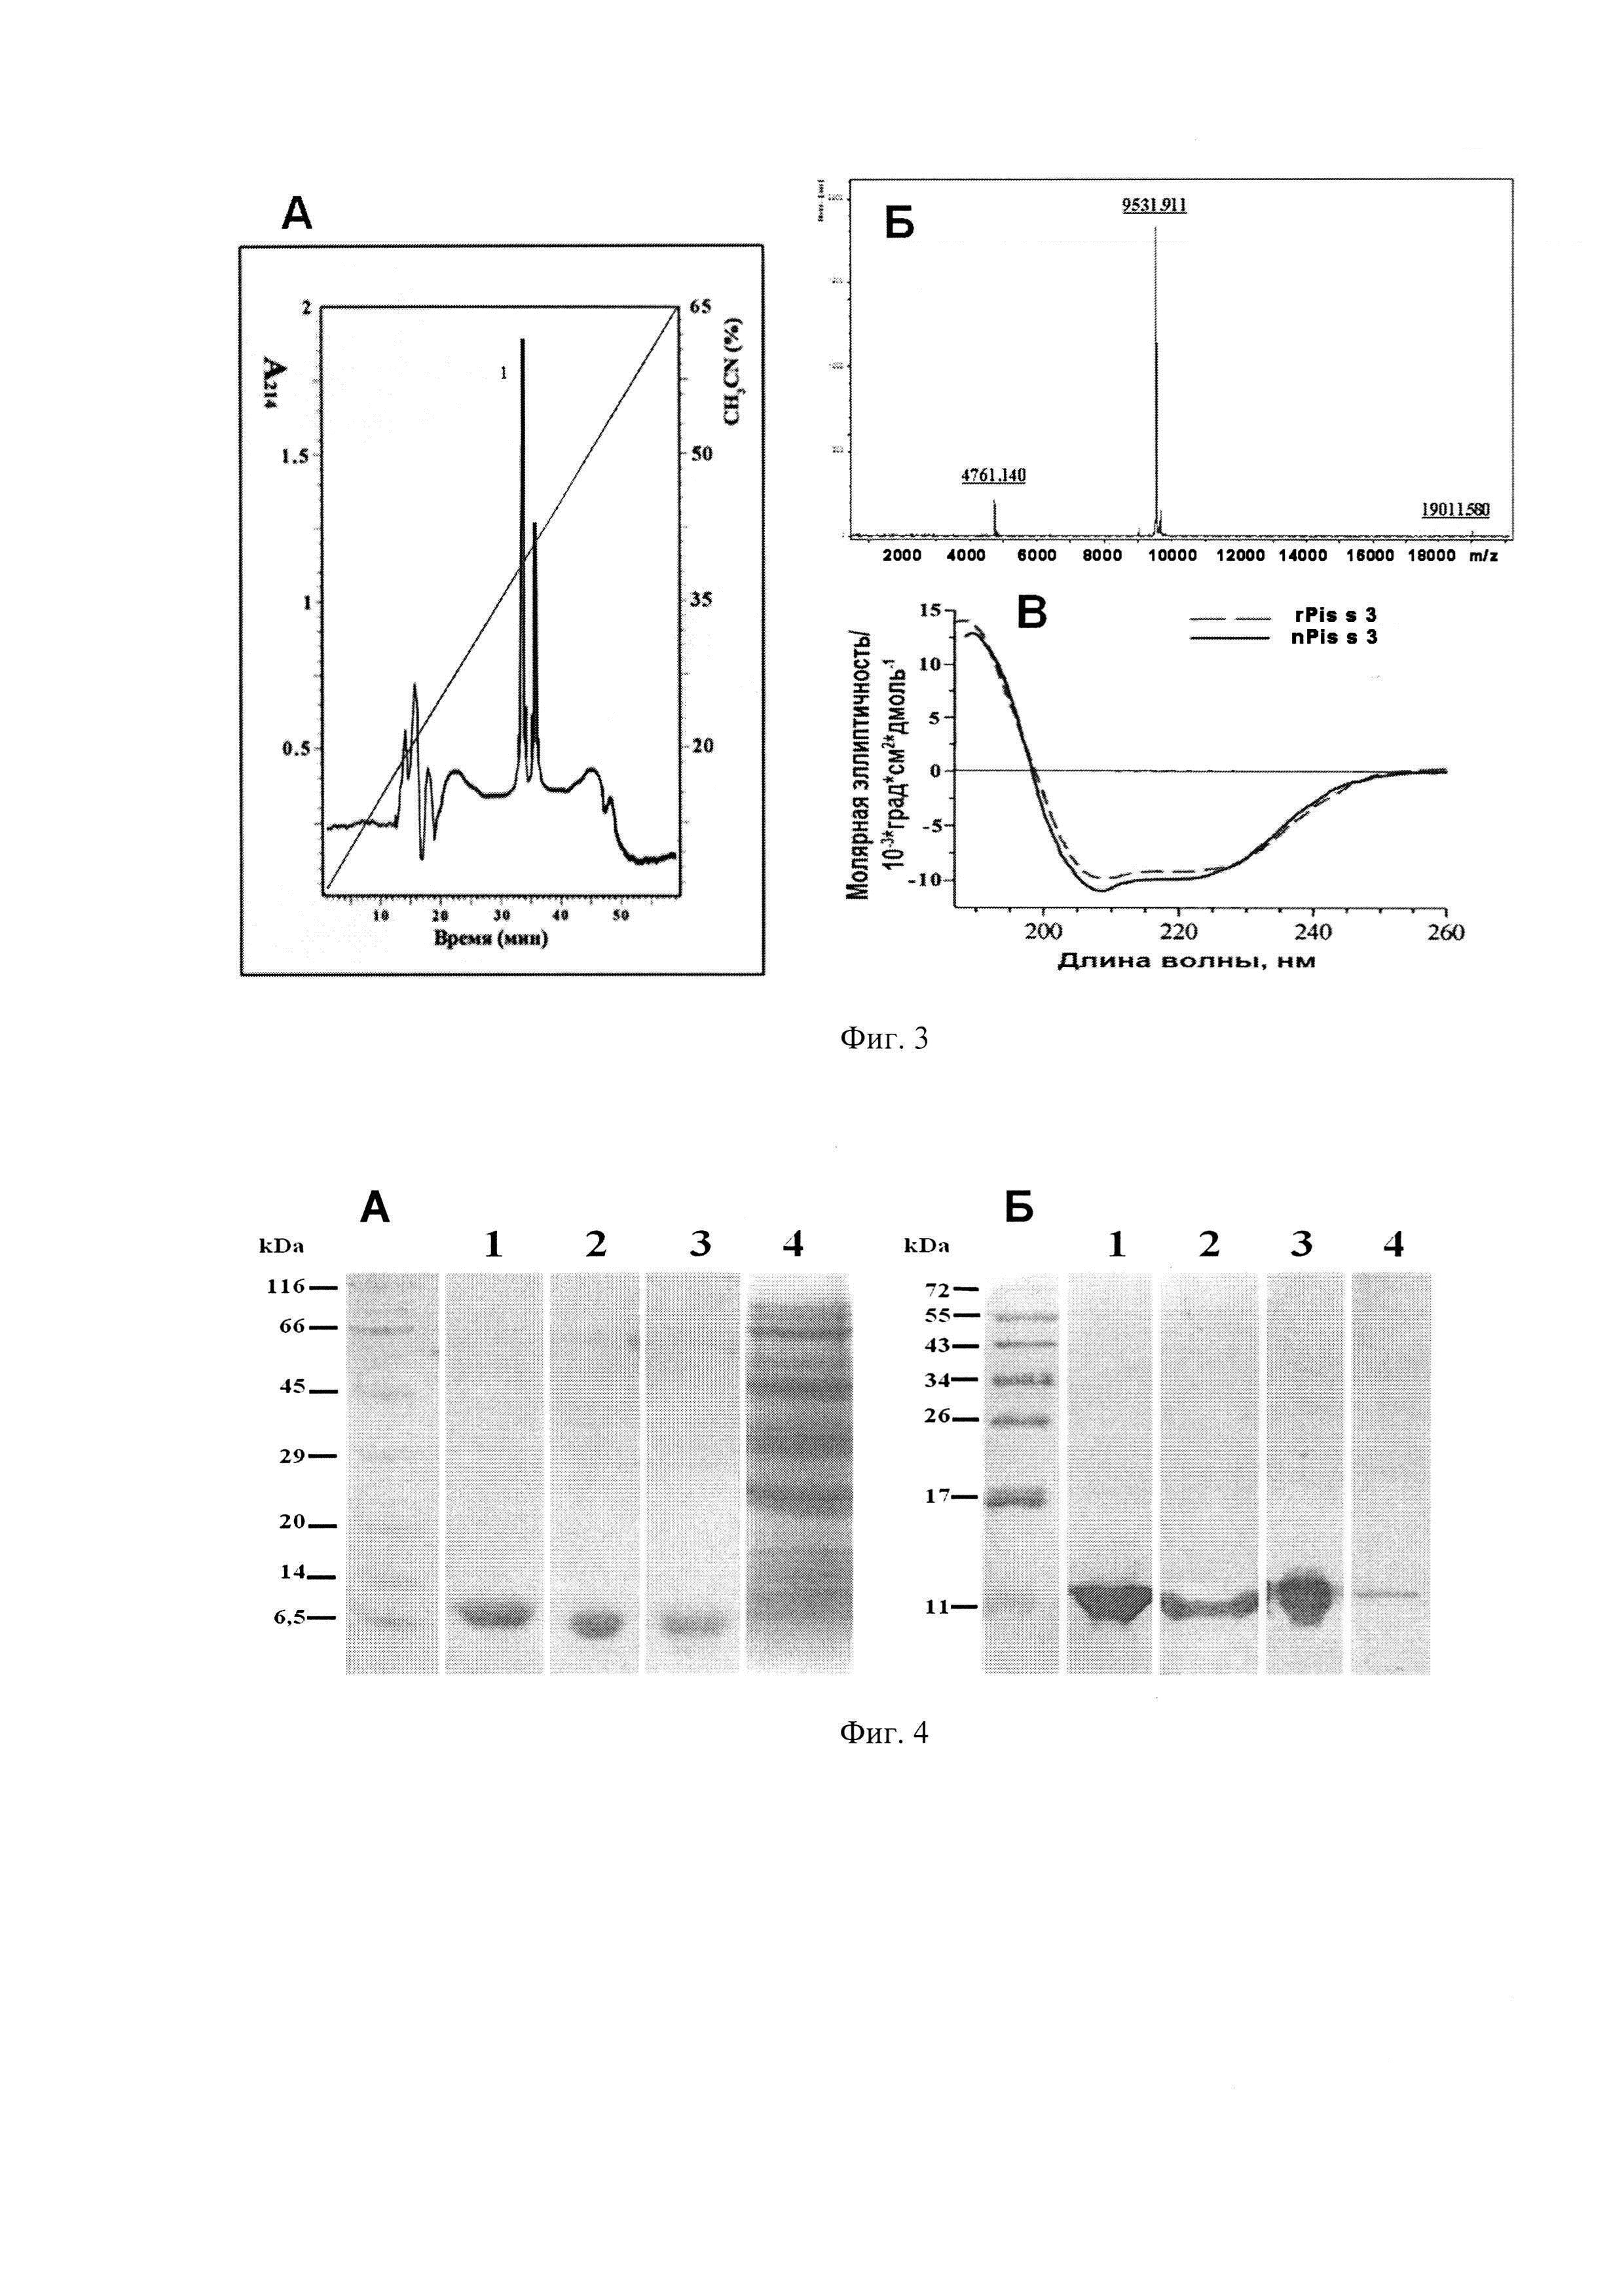 Плазмидный вектор pET-pPsLTP, штамм бактерии Escherichia coli BL21(DE3)Star/ pET-pPsLTP - продуцент пищевого аллергена гороха Pis s 3 и способ получения указанного аллергена